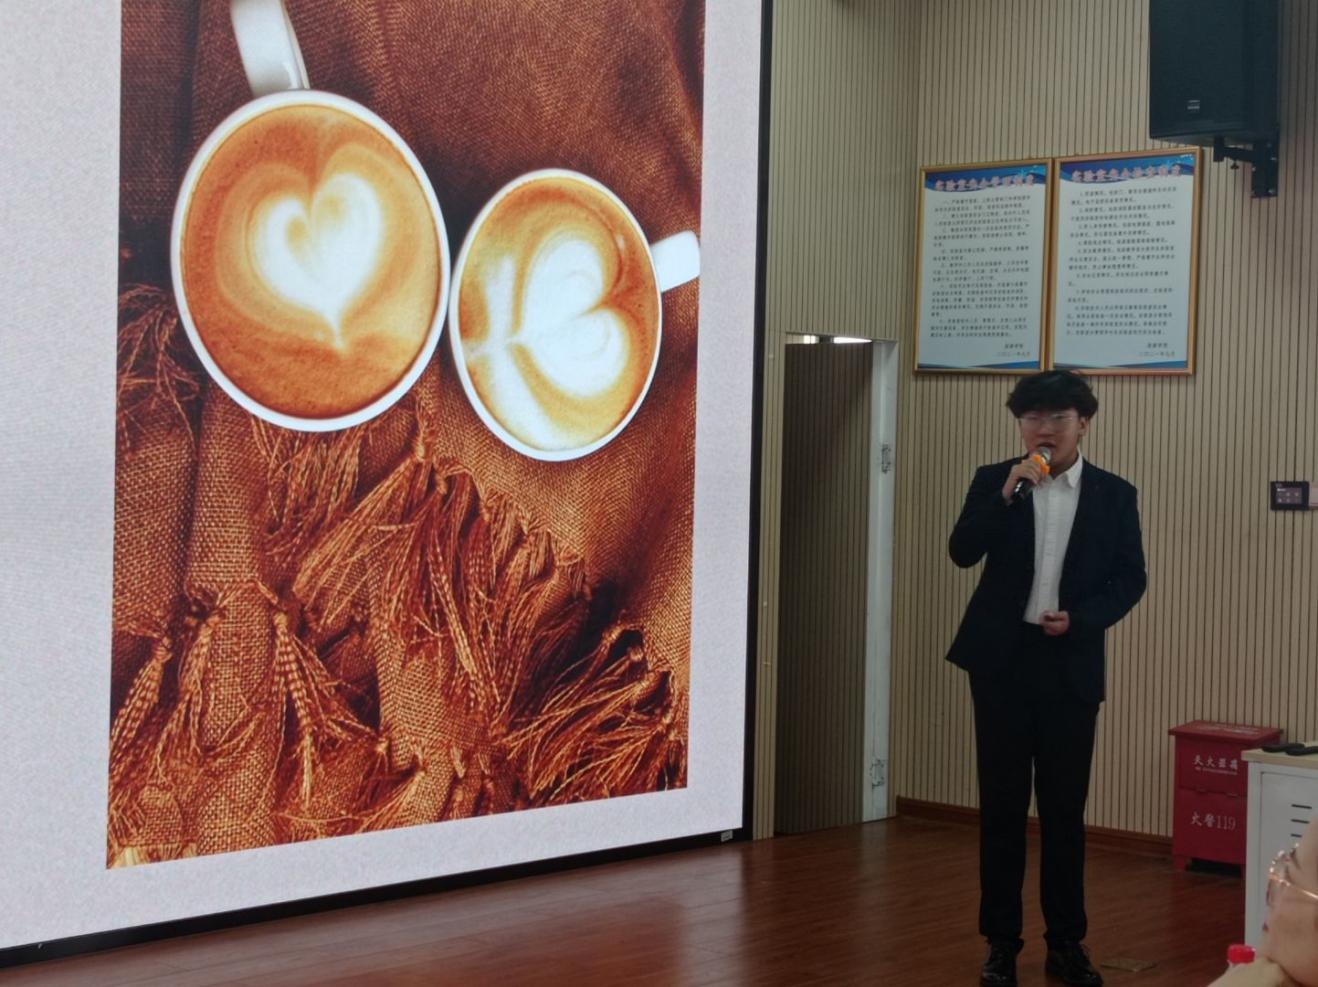 制作醇美咖啡 培养创新创业意识 提升专业素养 海南师范大学旅游学院酒店管理系 “我的